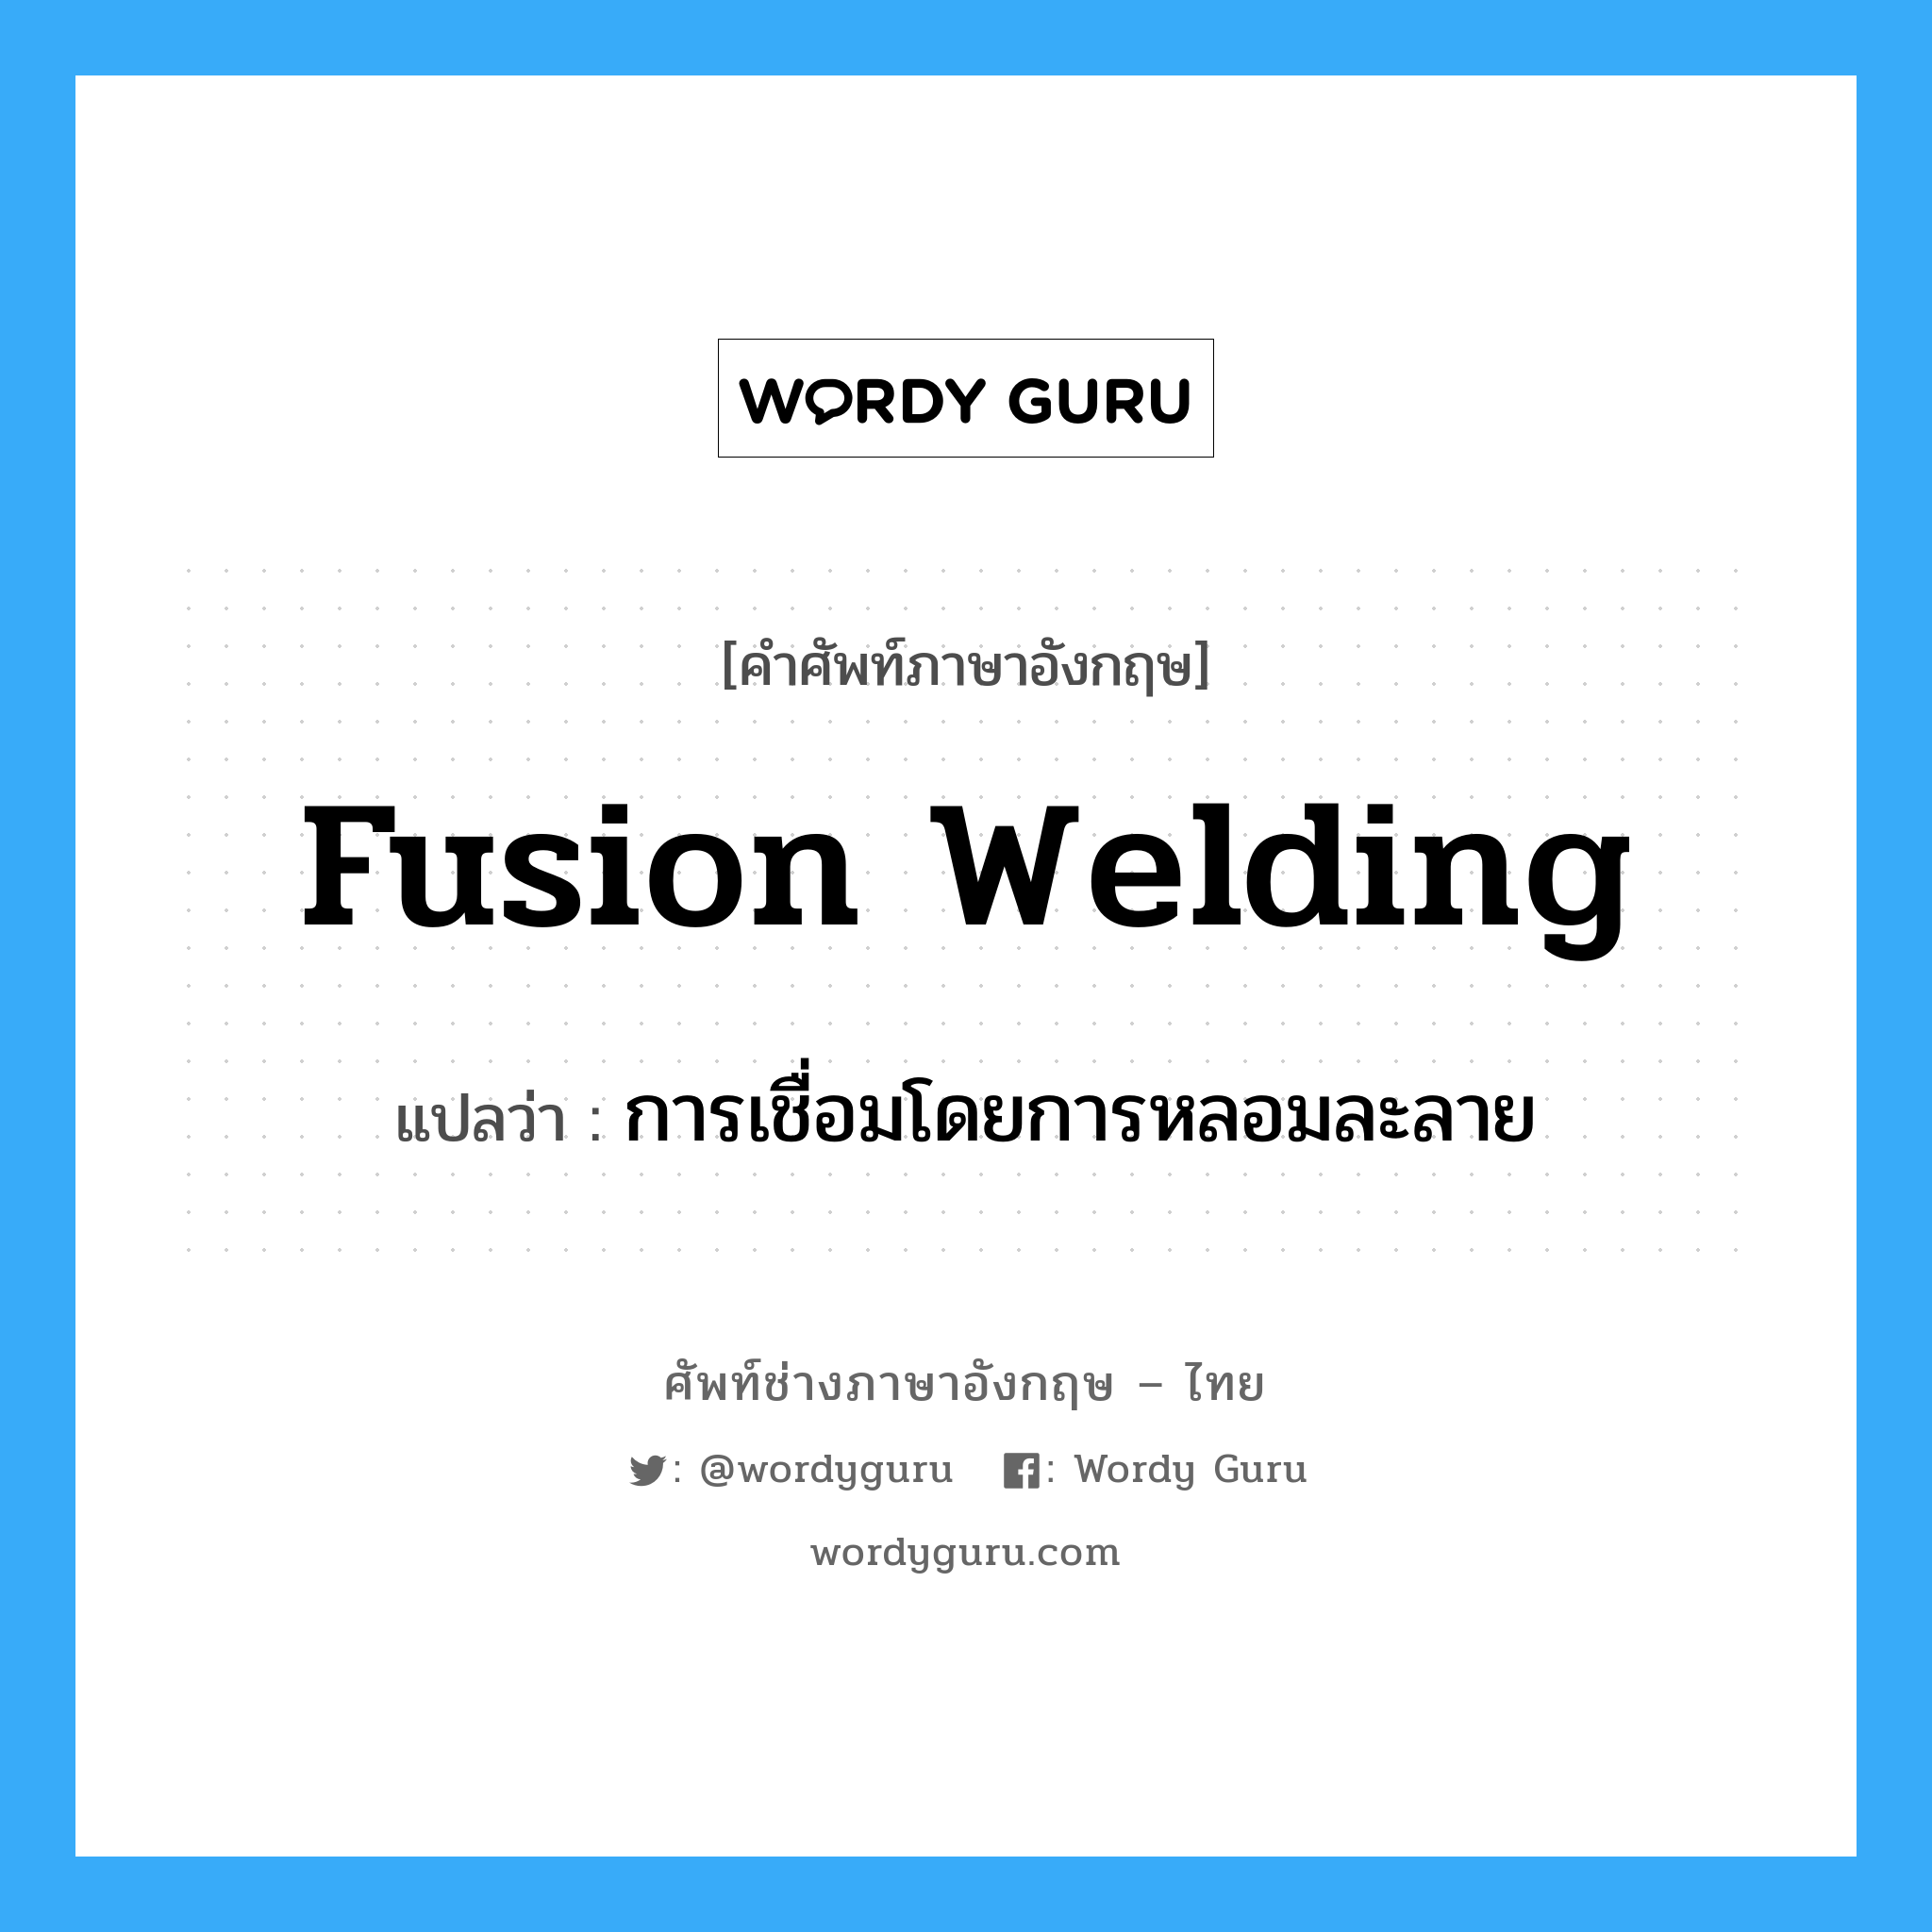 การเชื่อมโดยการหลอมละลาย ภาษาอังกฤษ?, คำศัพท์ช่างภาษาอังกฤษ - ไทย การเชื่อมโดยการหลอมละลาย คำศัพท์ภาษาอังกฤษ การเชื่อมโดยการหลอมละลาย แปลว่า fusion welding